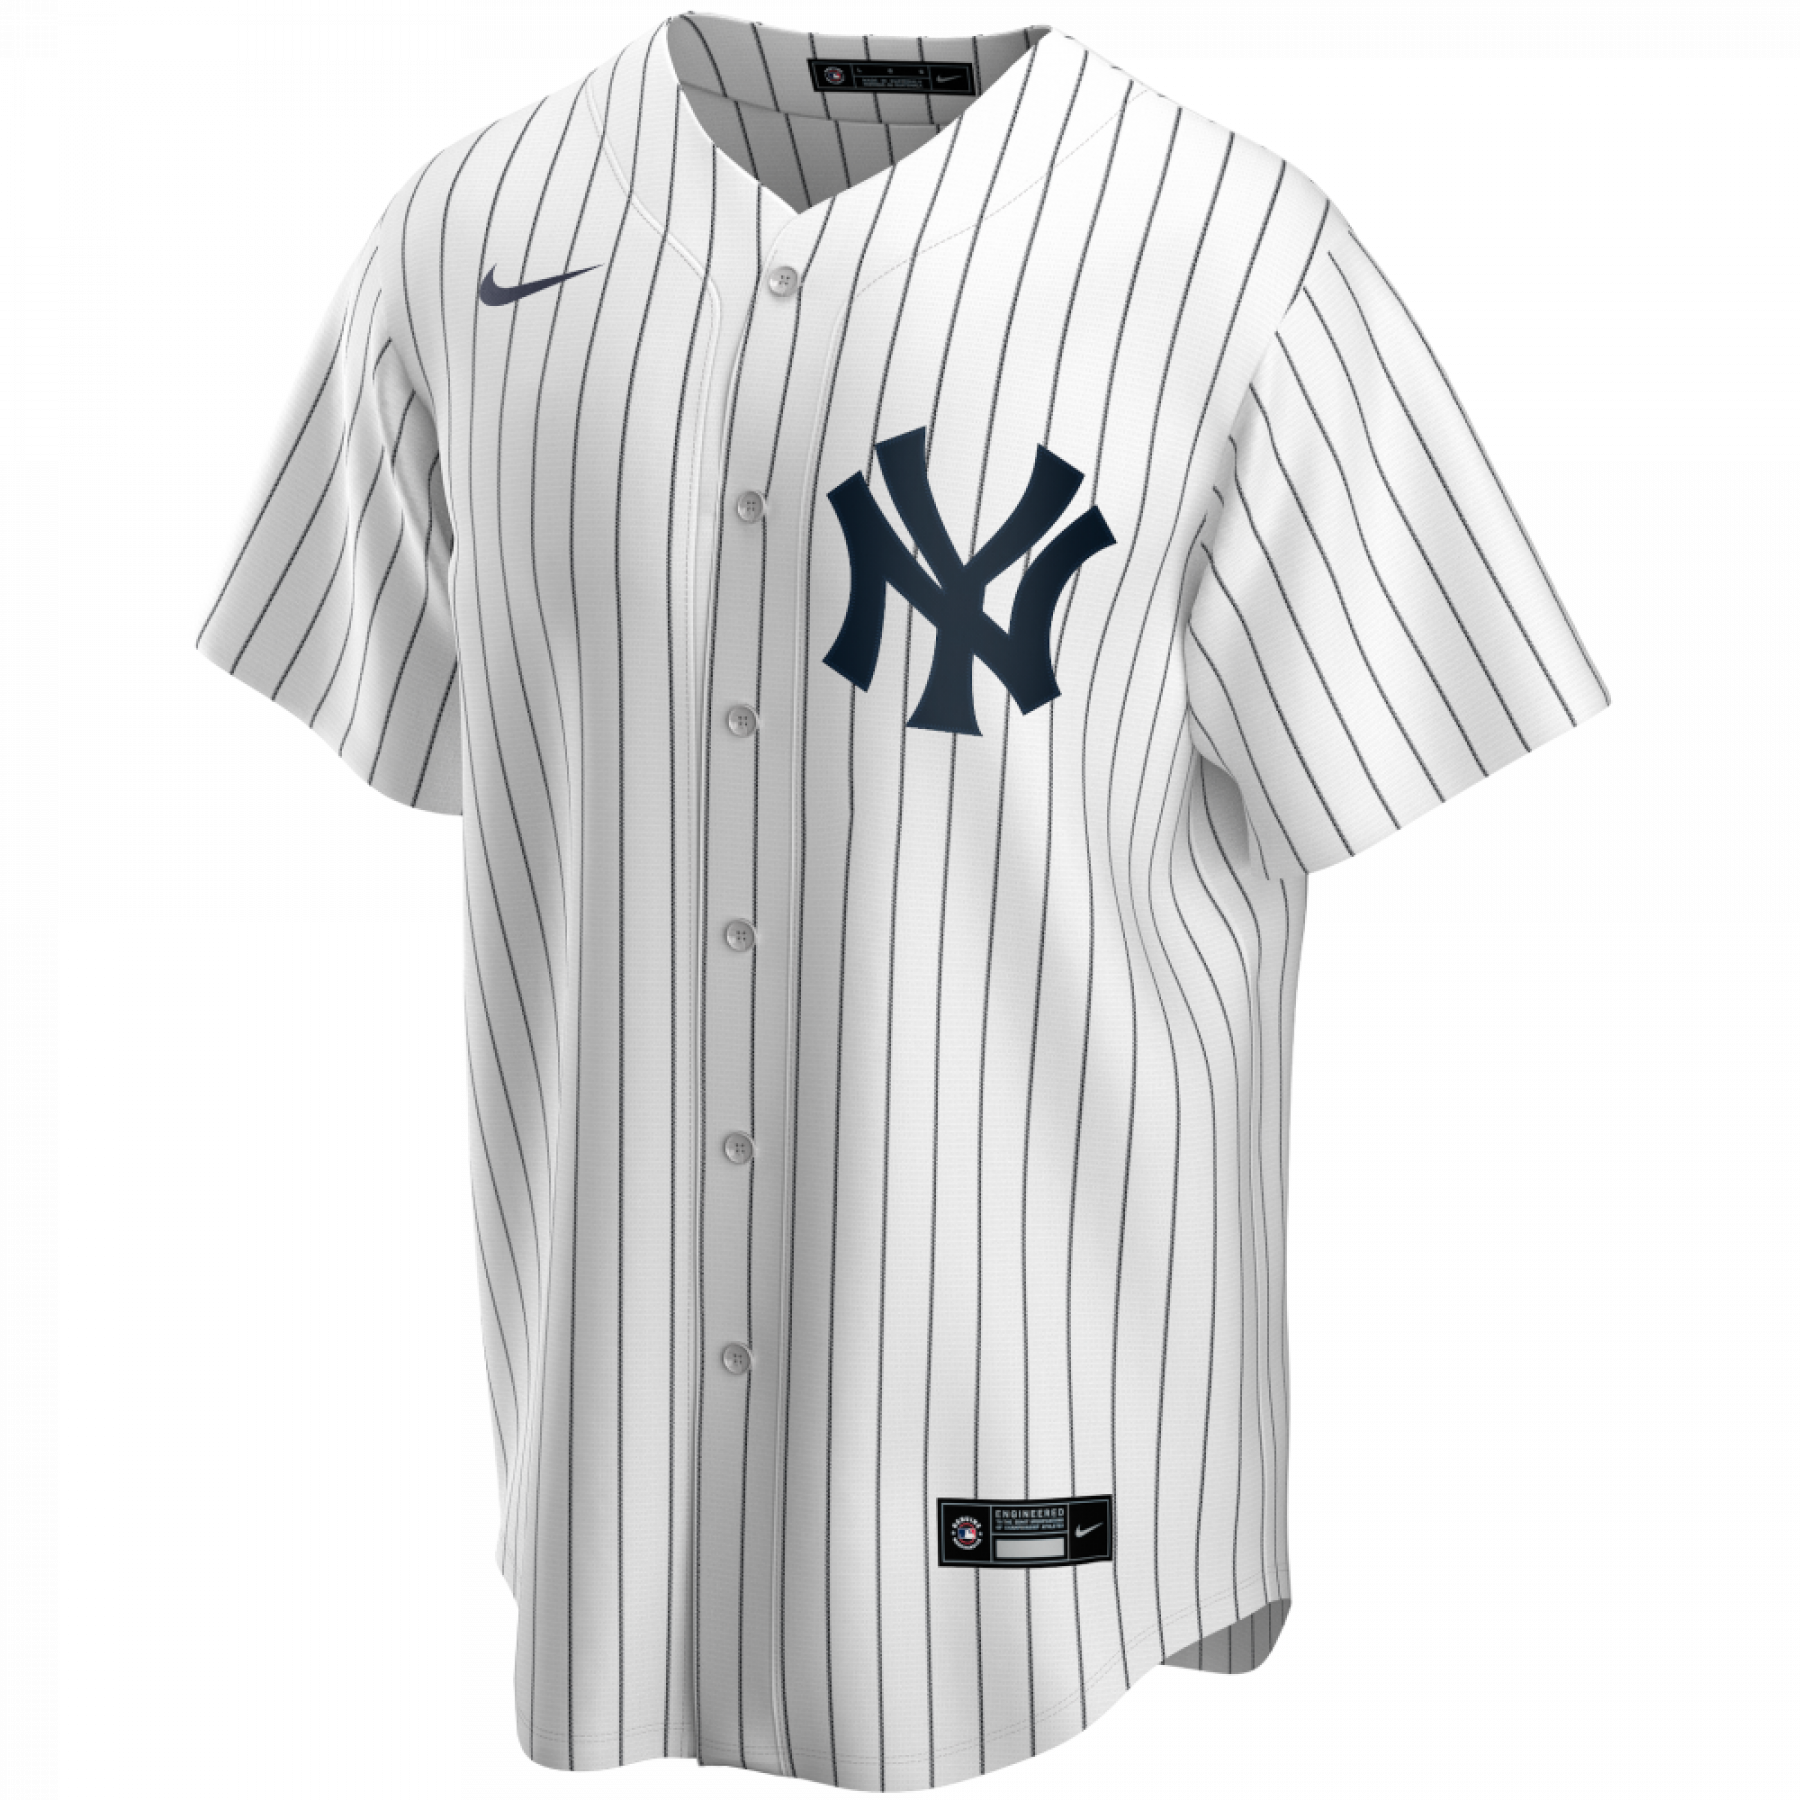 Officiële replica new york yankees jersey